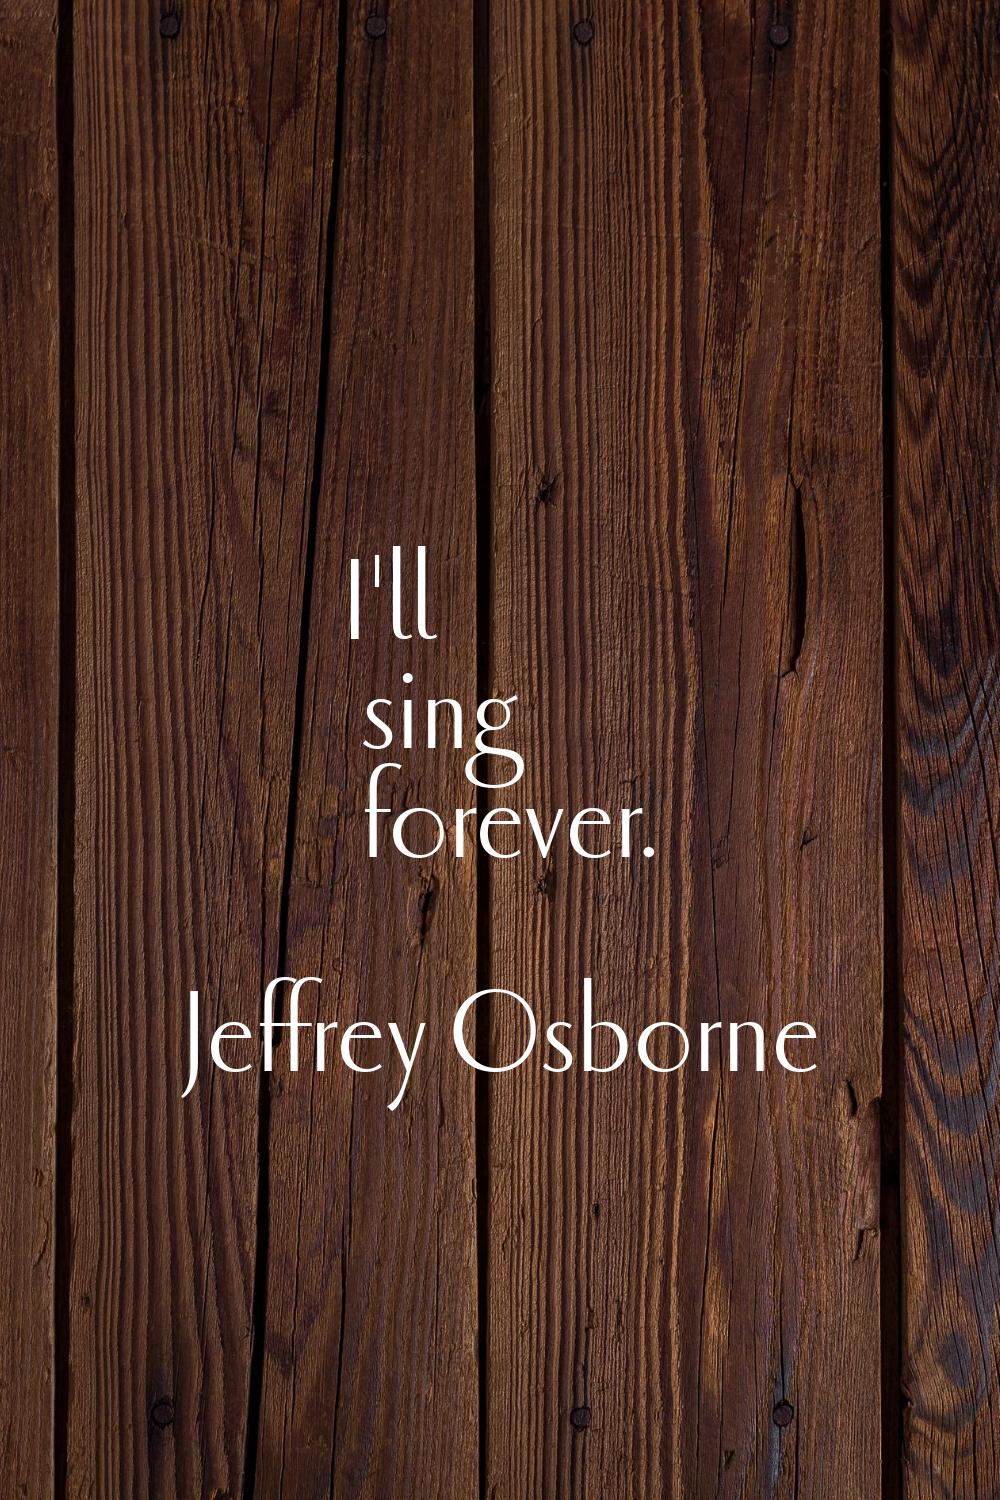 I'll sing forever.